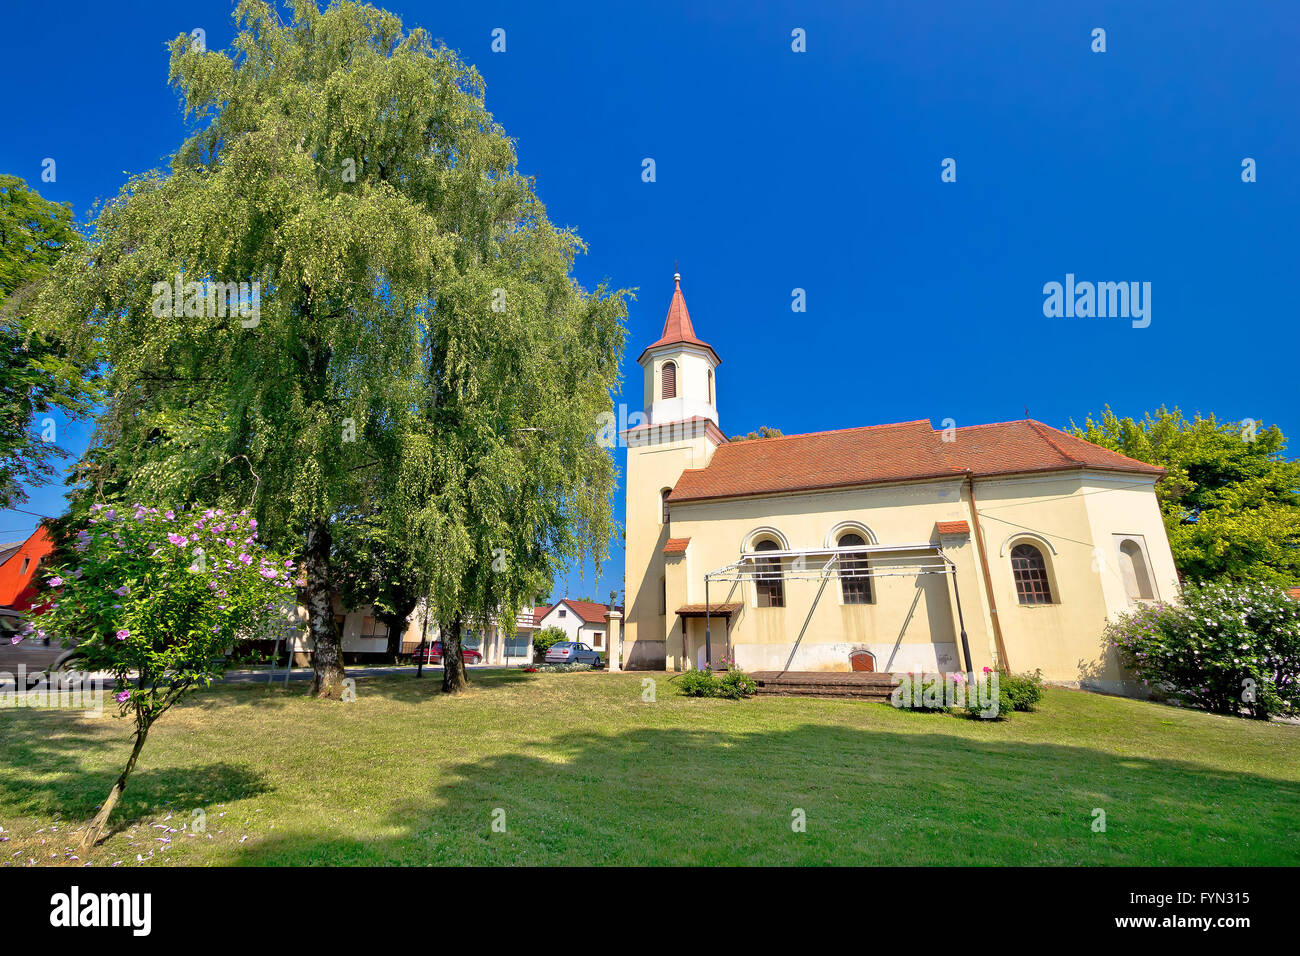 Town of Krizevci Saint Marko church Stock Photo